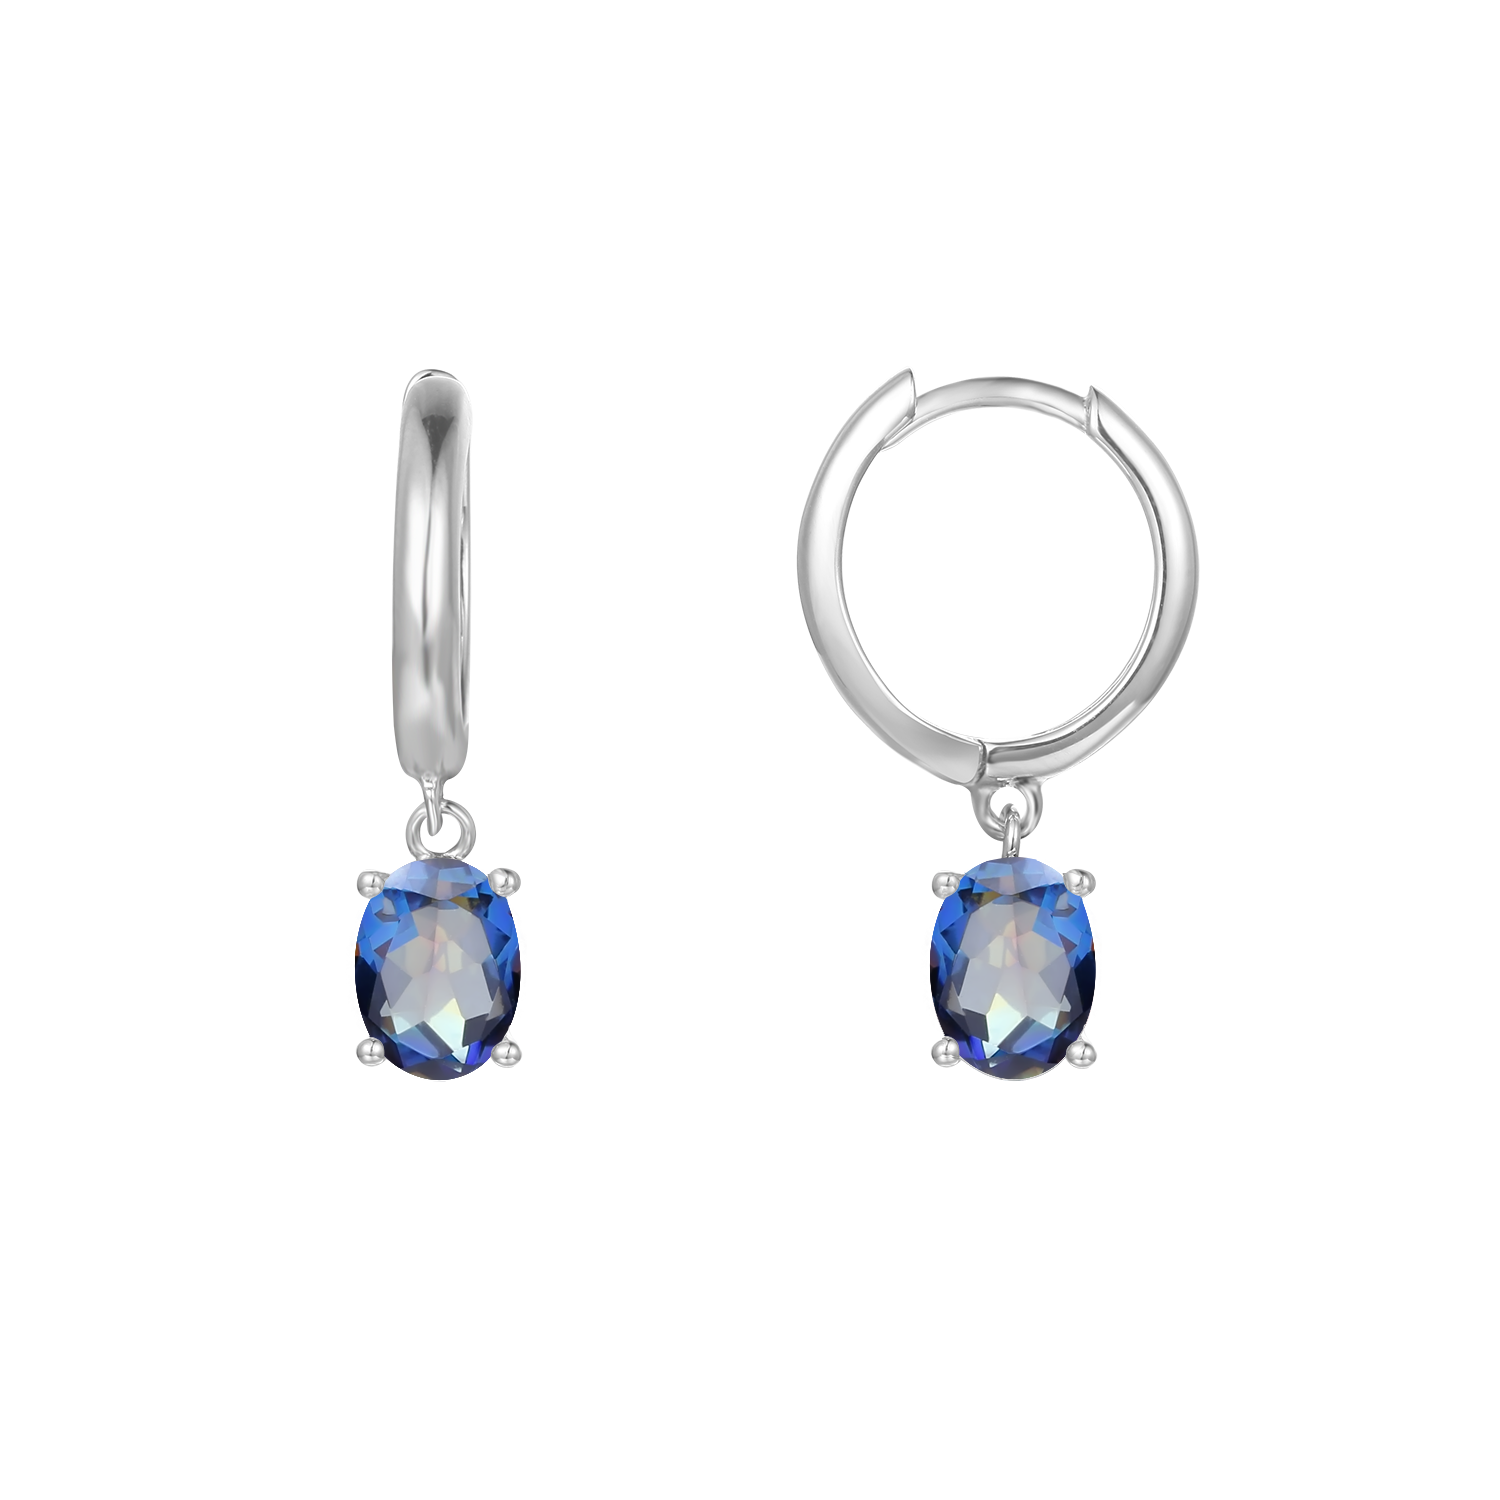 GEM&#39;S BALLET December Birthstone Jewelry 6x8mmOval Swiss Blue Topaz Gemstone Dangle Earrings in 925 Sterling Silver For Women Blueish 925 Sterling Silver